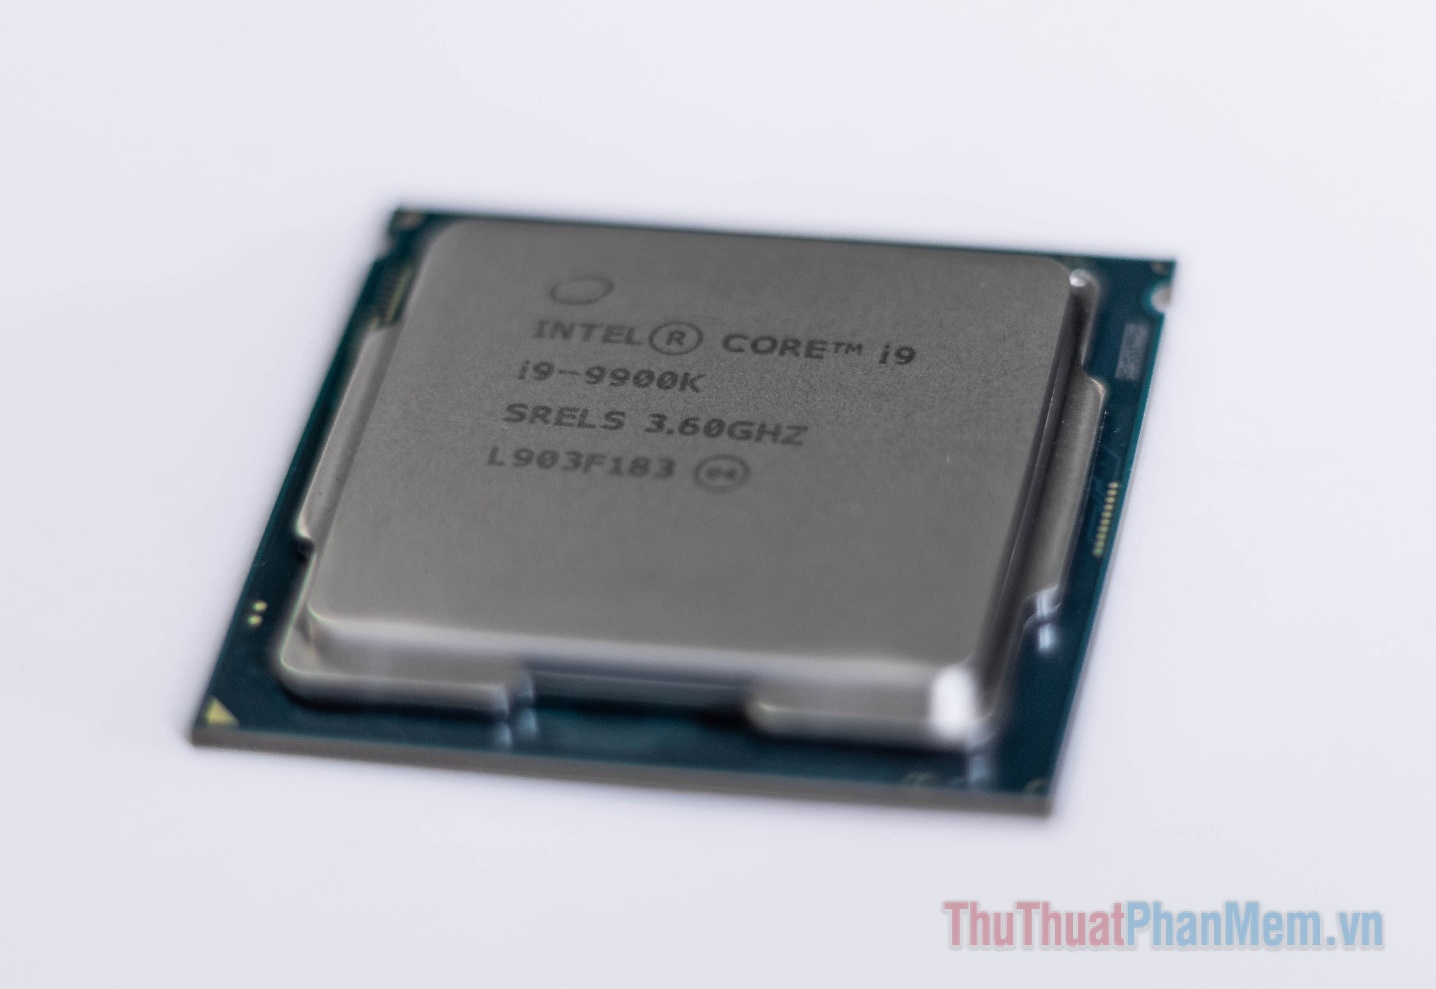 Bộ xử lý AMD có xu hướng nói hơn so với Intel, bạn sẽ cần chú ý tới nhiệt độ và hệ thống tản nhiệt